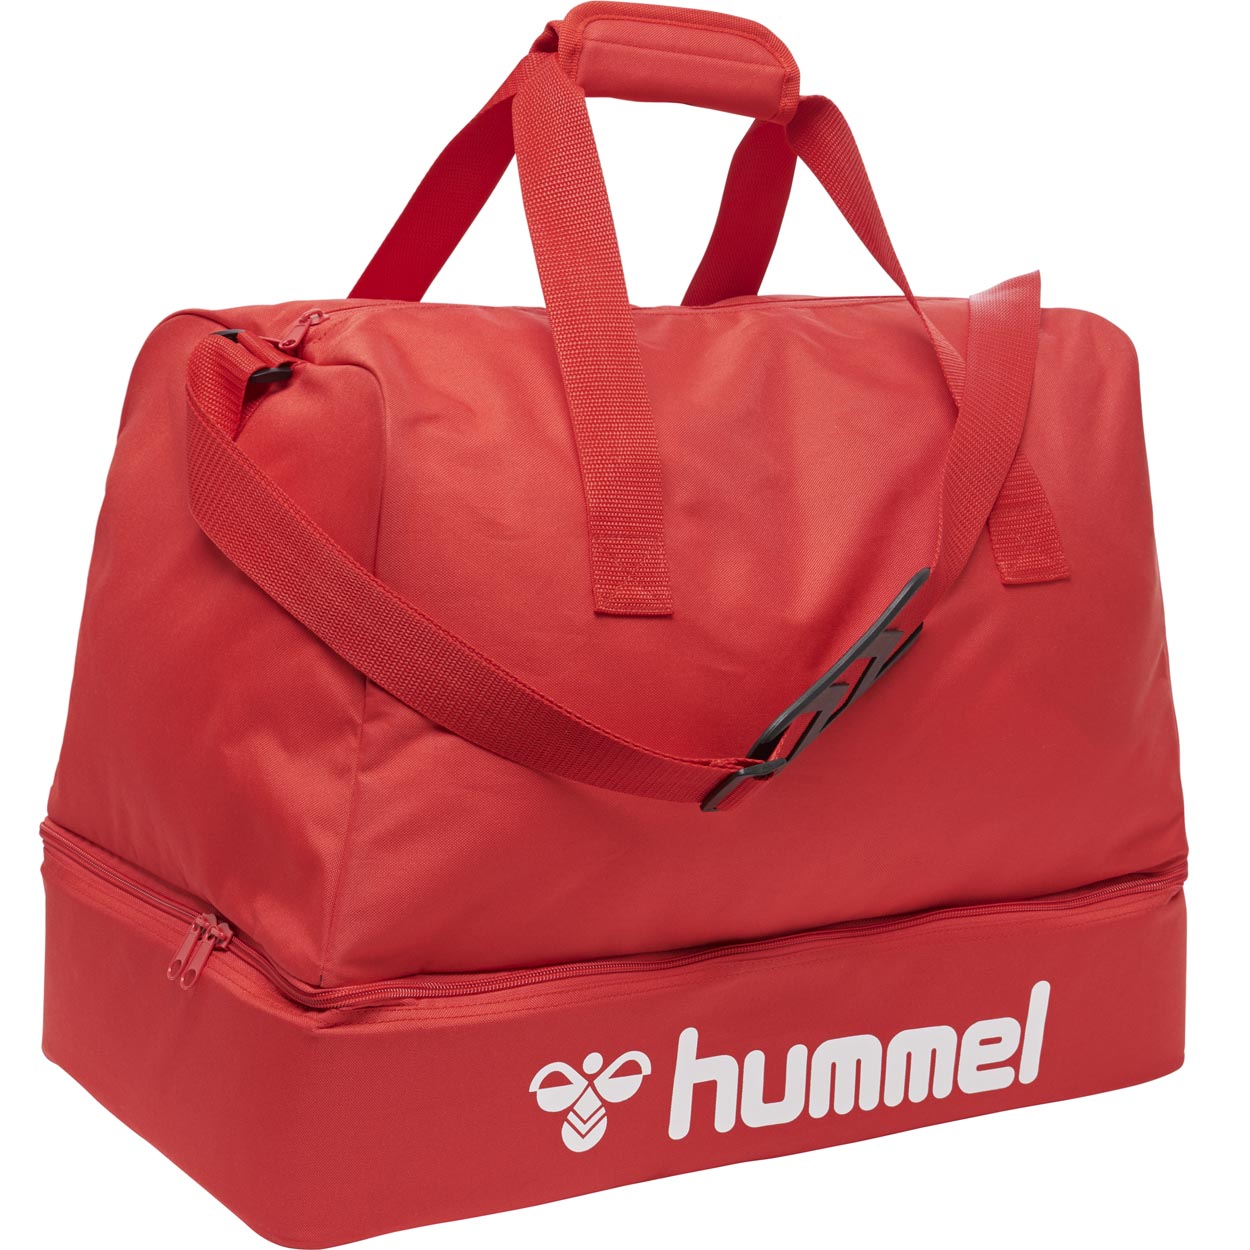 HUMMEL CORE FOOTBALL BAG True red